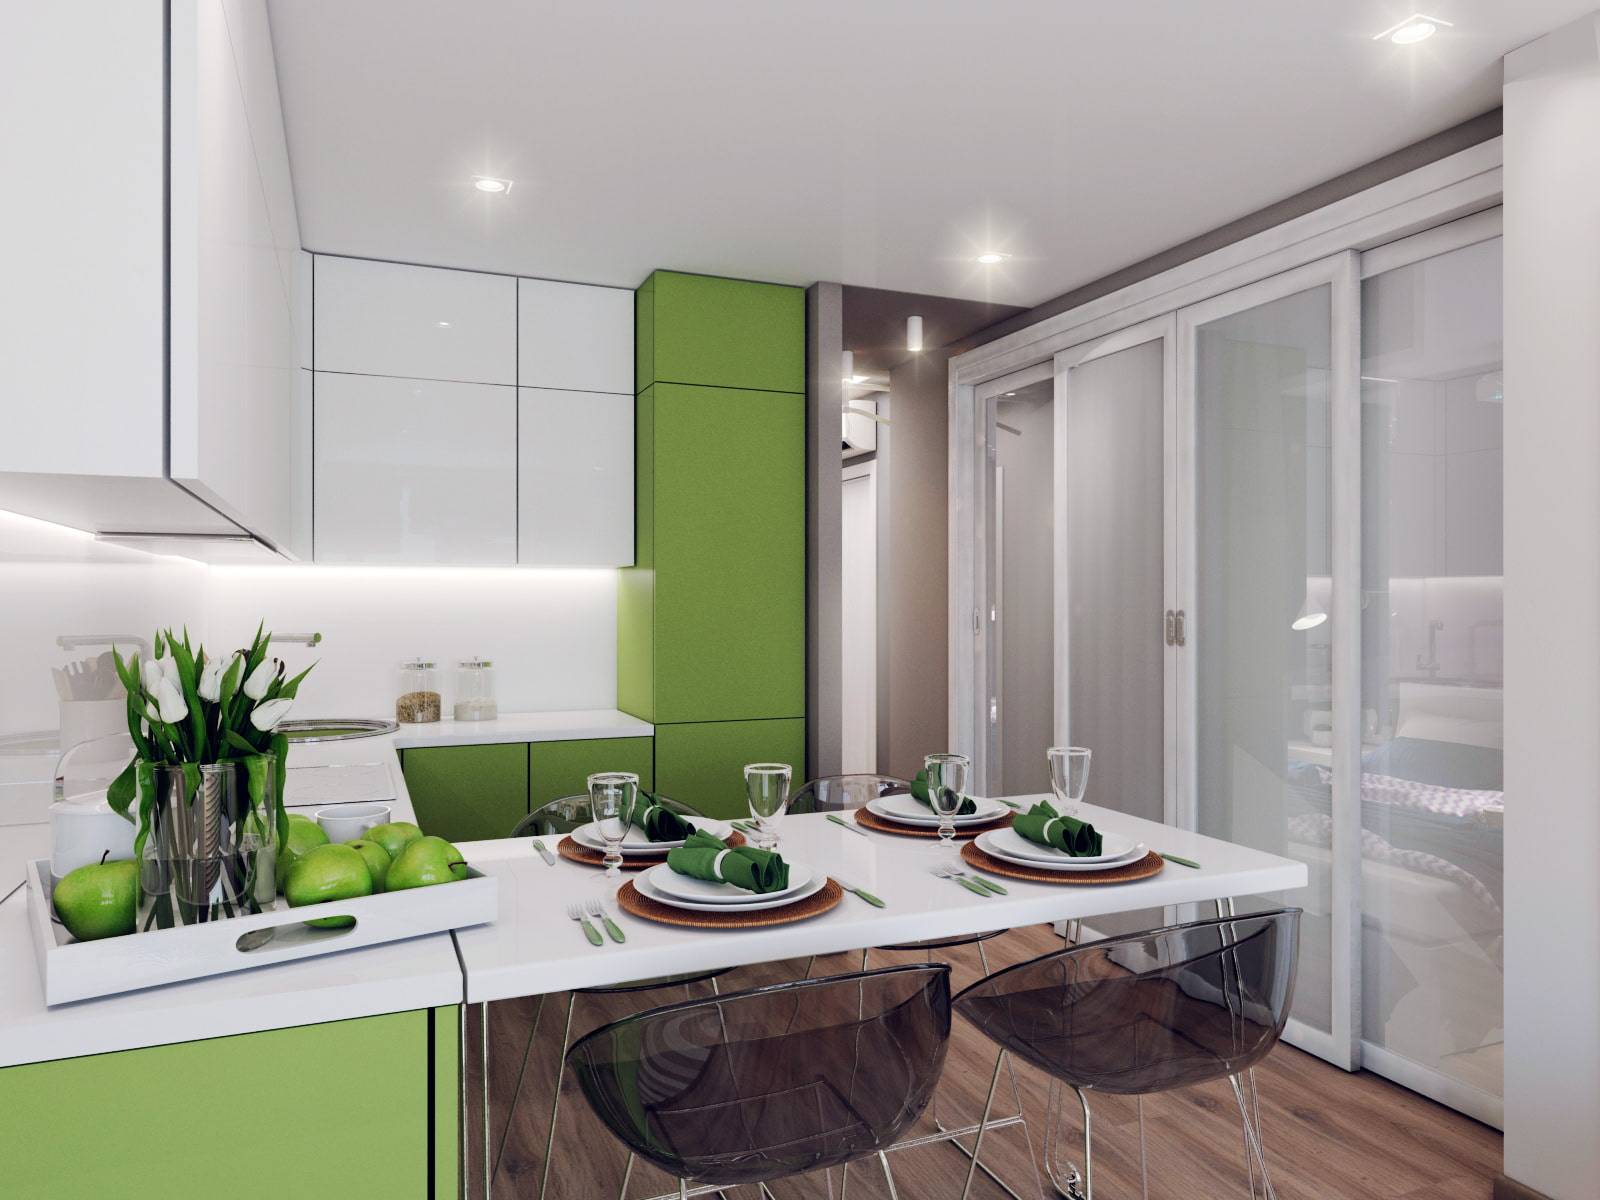 Кухня 10 кв. метров: фото интерьеров, дизайн и планировка, основные тенденции, популярные стили и цвета